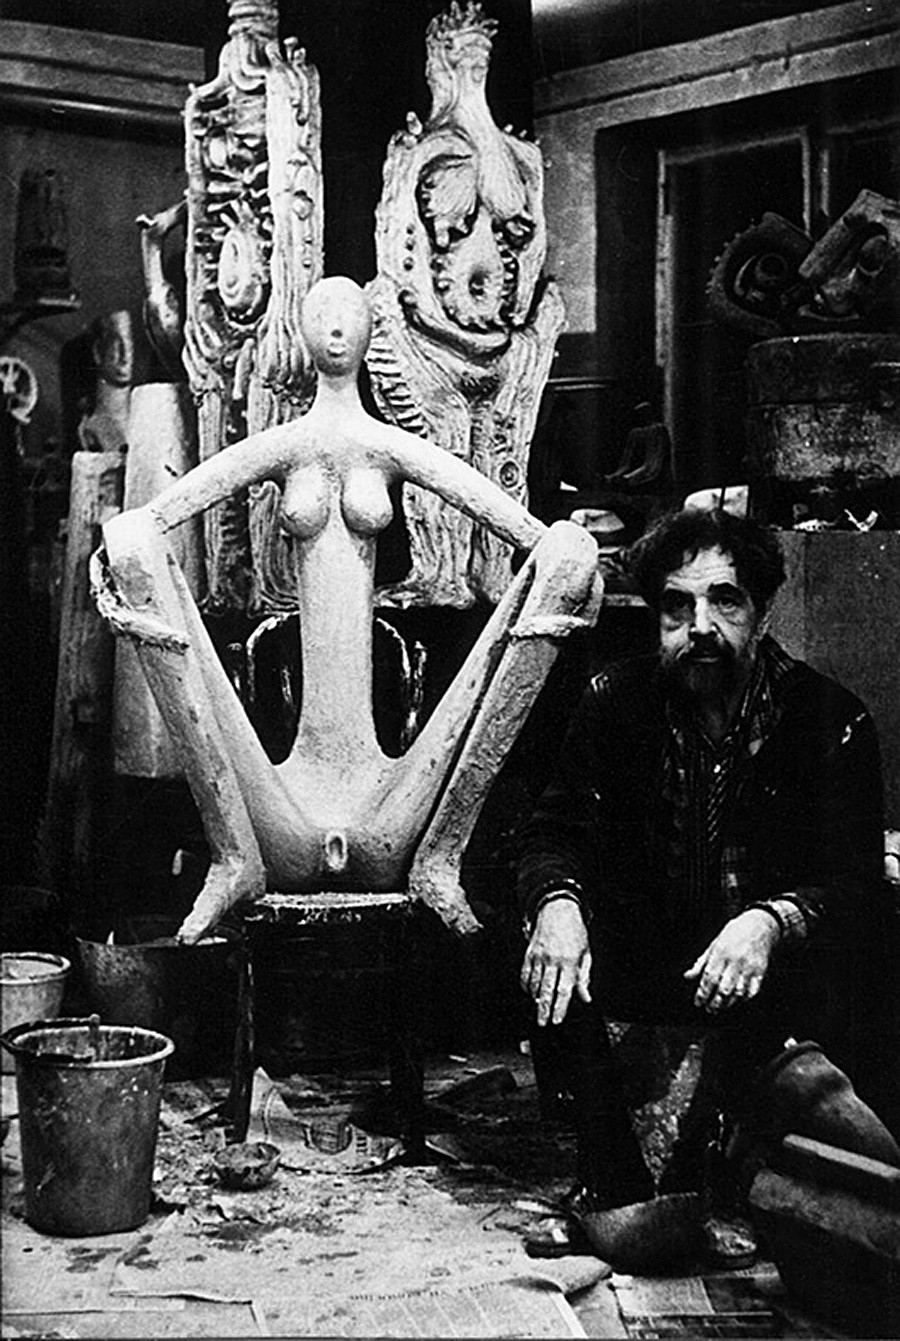 Sidur dans son studio et la Vénus sur une chaise viennois